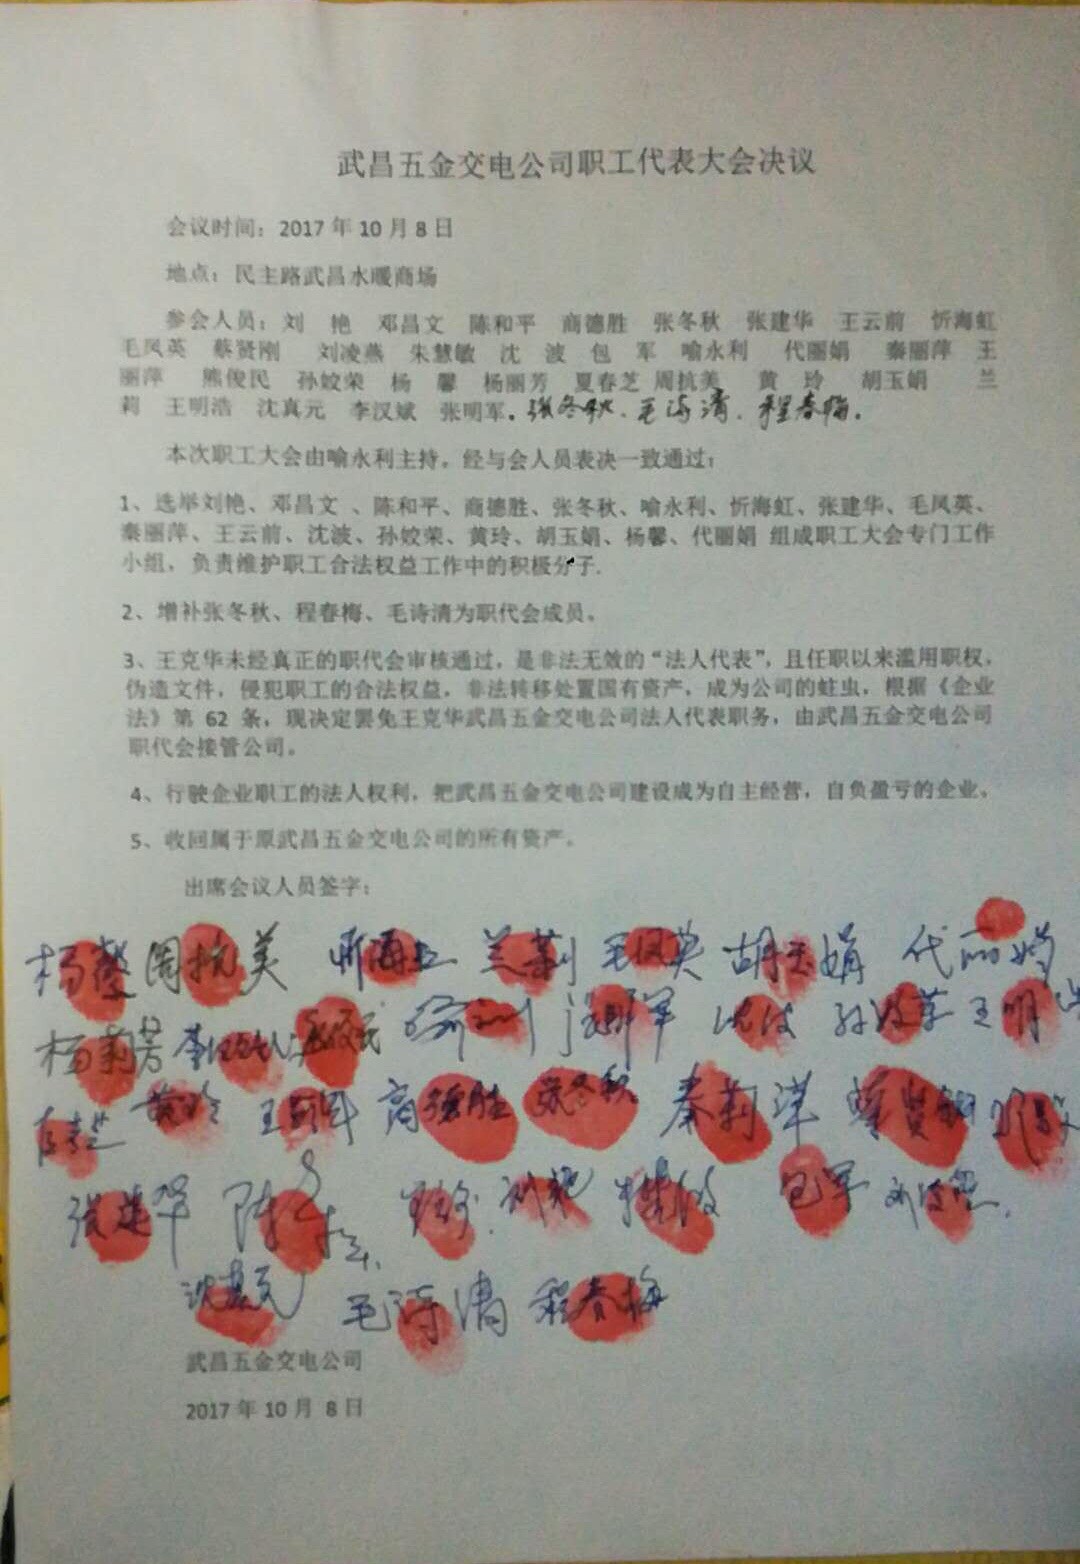 一个共产党人给武昌五金交电公司职工大会的贺信-激流网